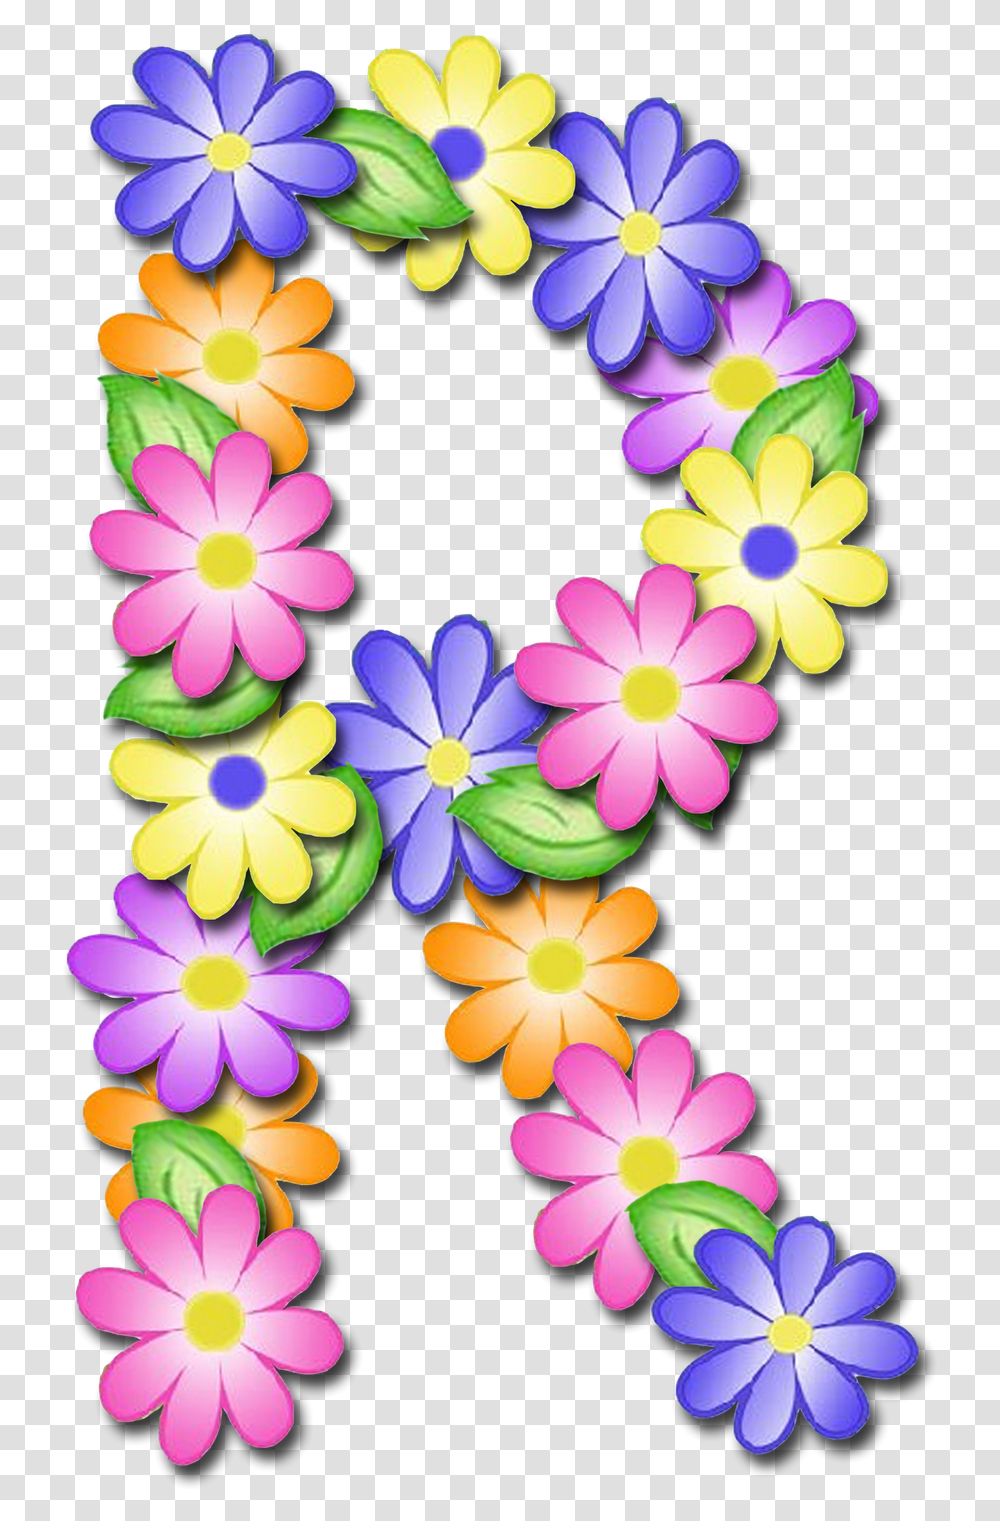 Alfabeto De Primavera Letras Letras De Flores P, Plant, Flower, Petal, Daisy Transparent Png